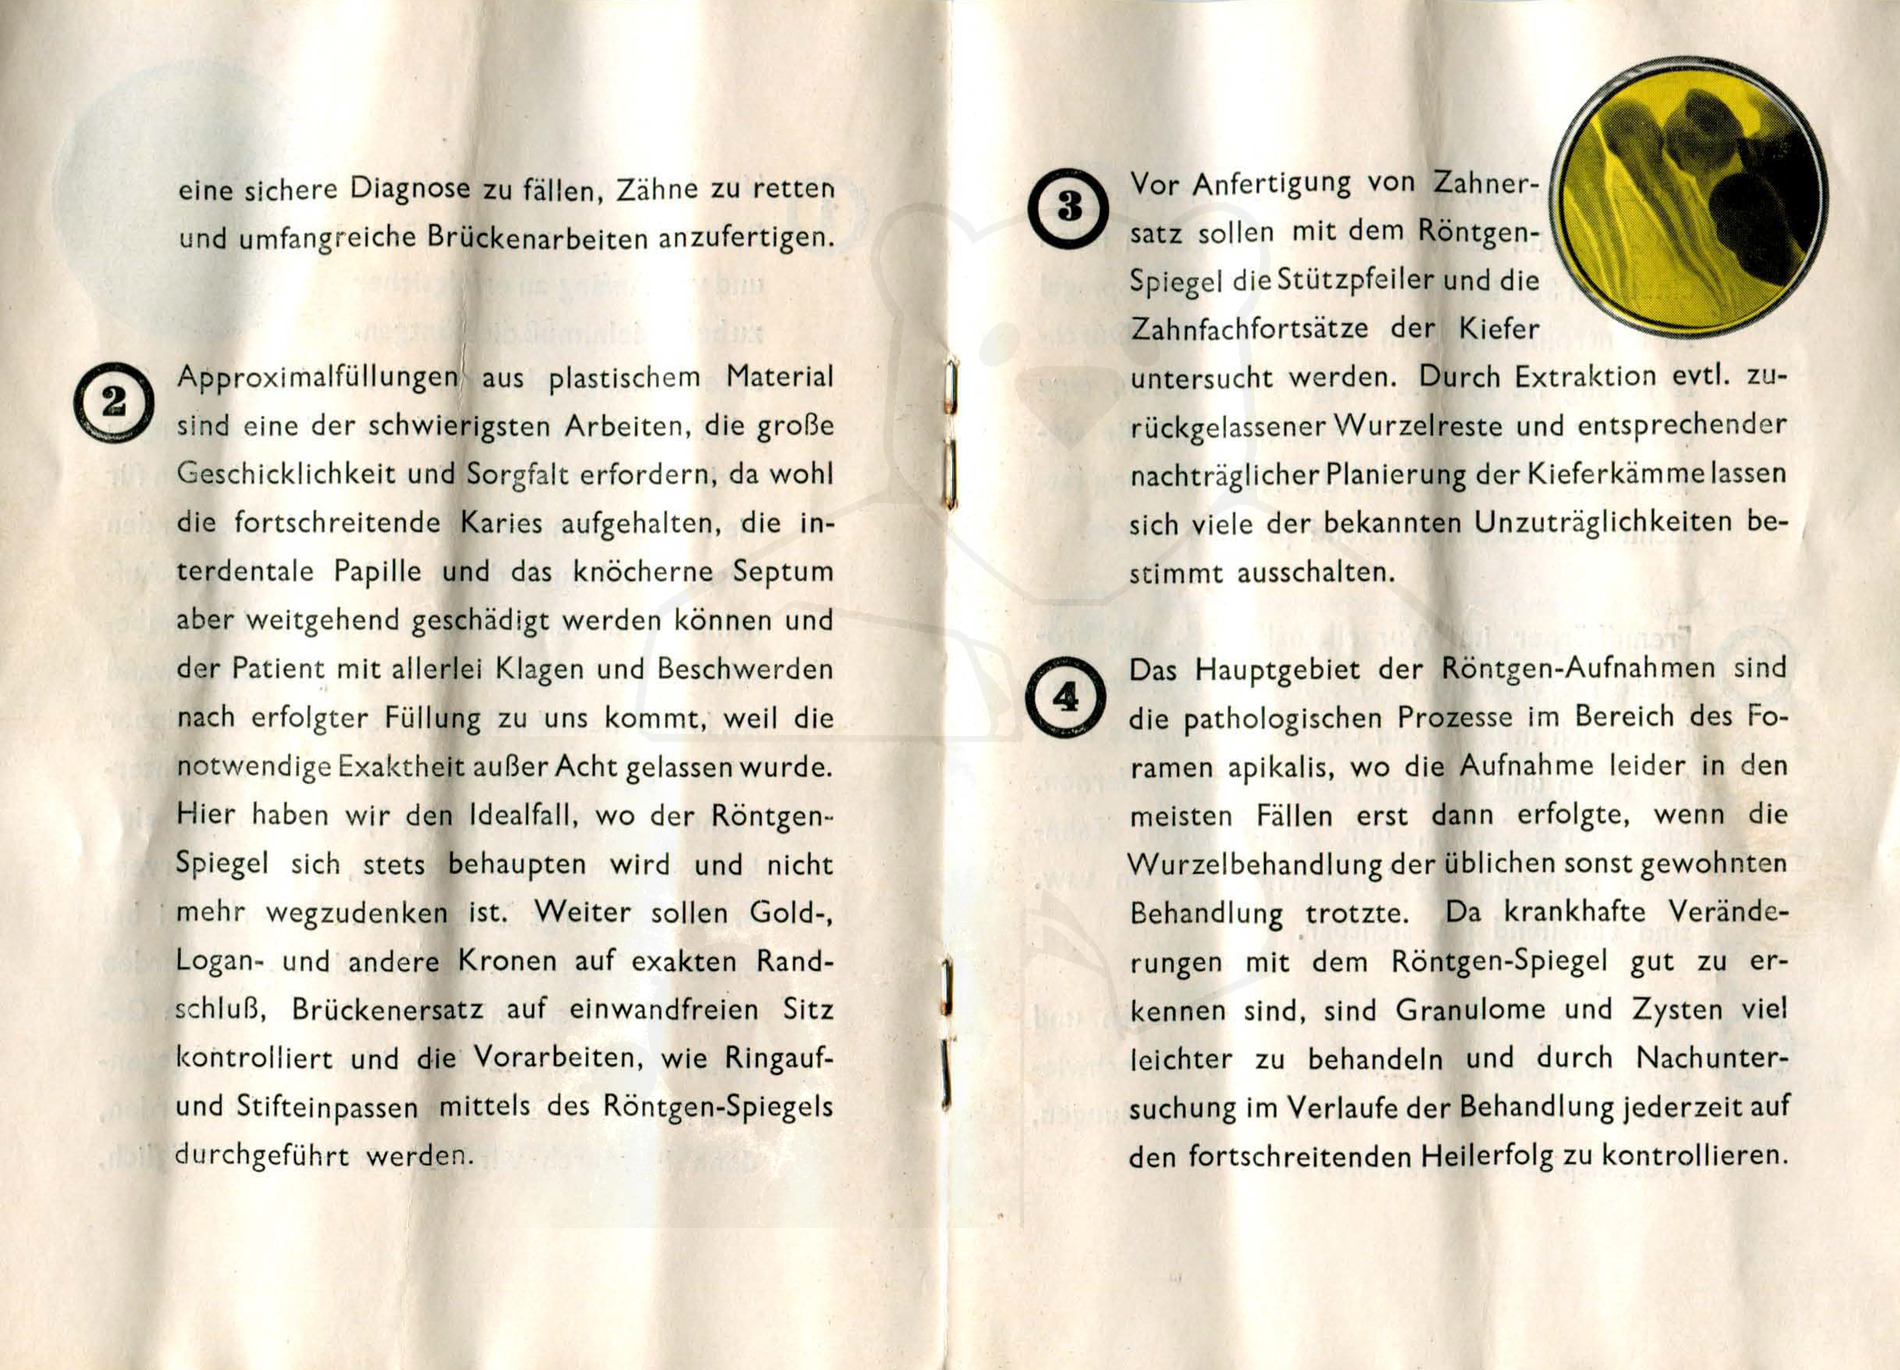 Röntgenspiegel nach Zeipper, Mitte der 1930'er Jahre - Anleitung, Seite 4 - 5